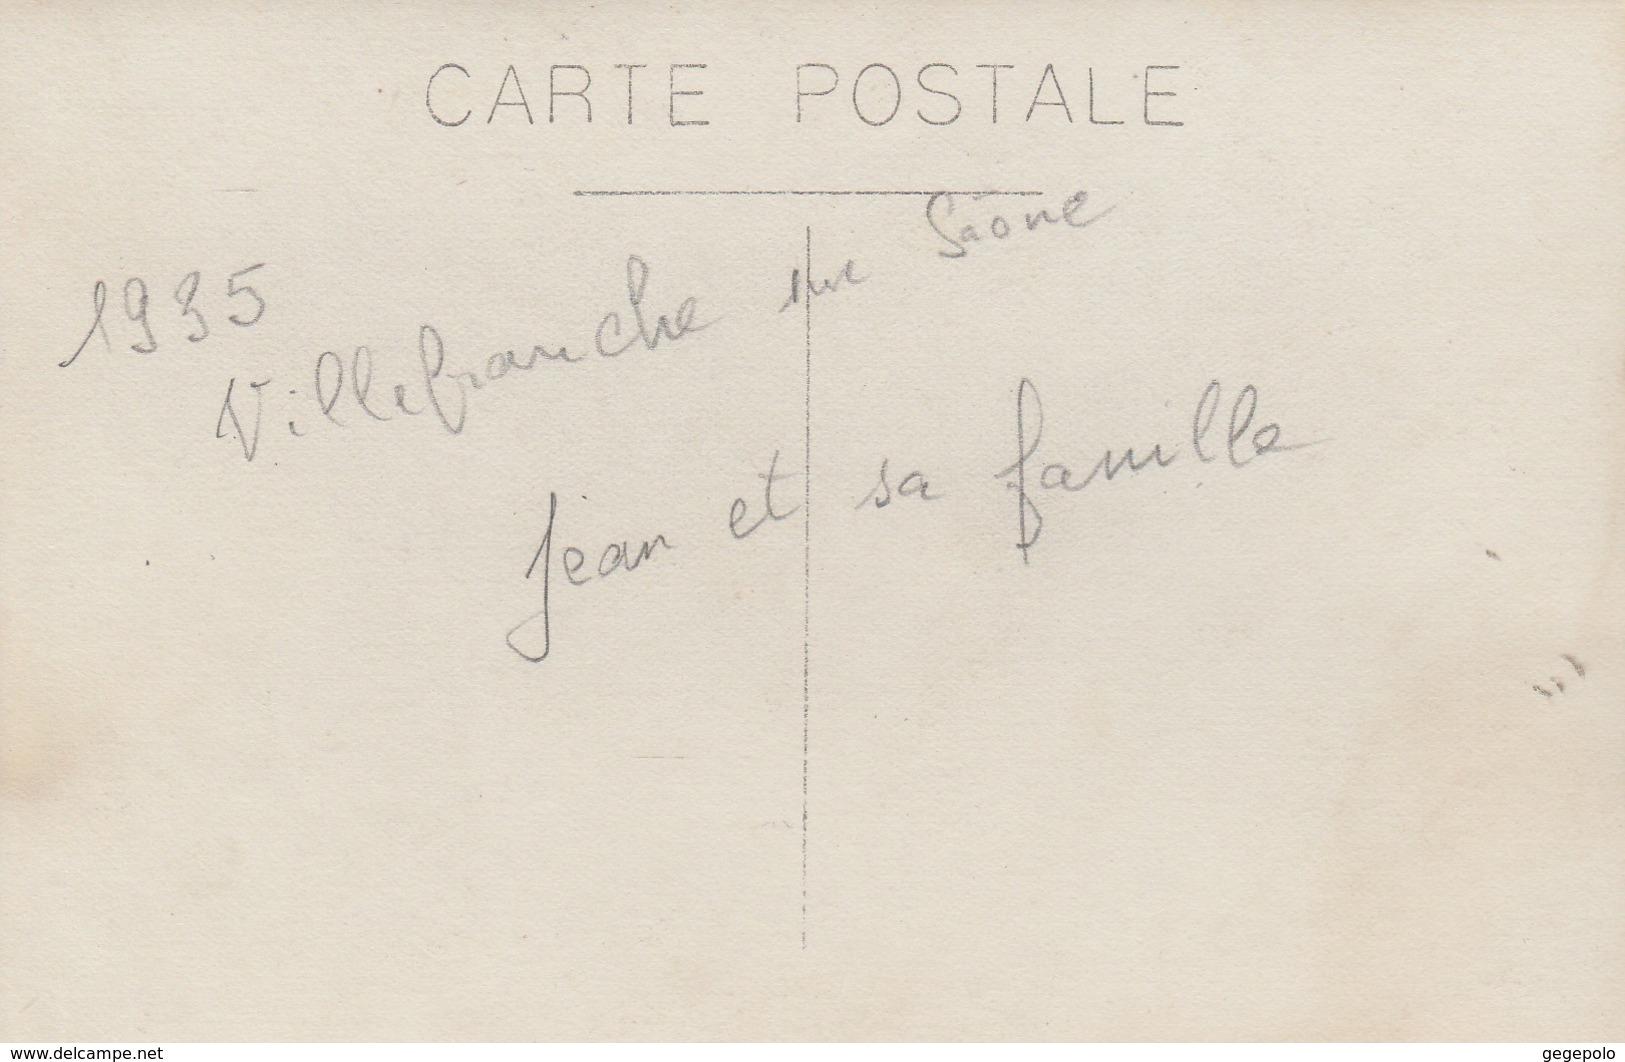 VILLEFRANCHE Sur SAONE - Jean ???? Et Sa Famille Posant En 1935 ( Carte Photo ) - Villefranche-sur-Saone